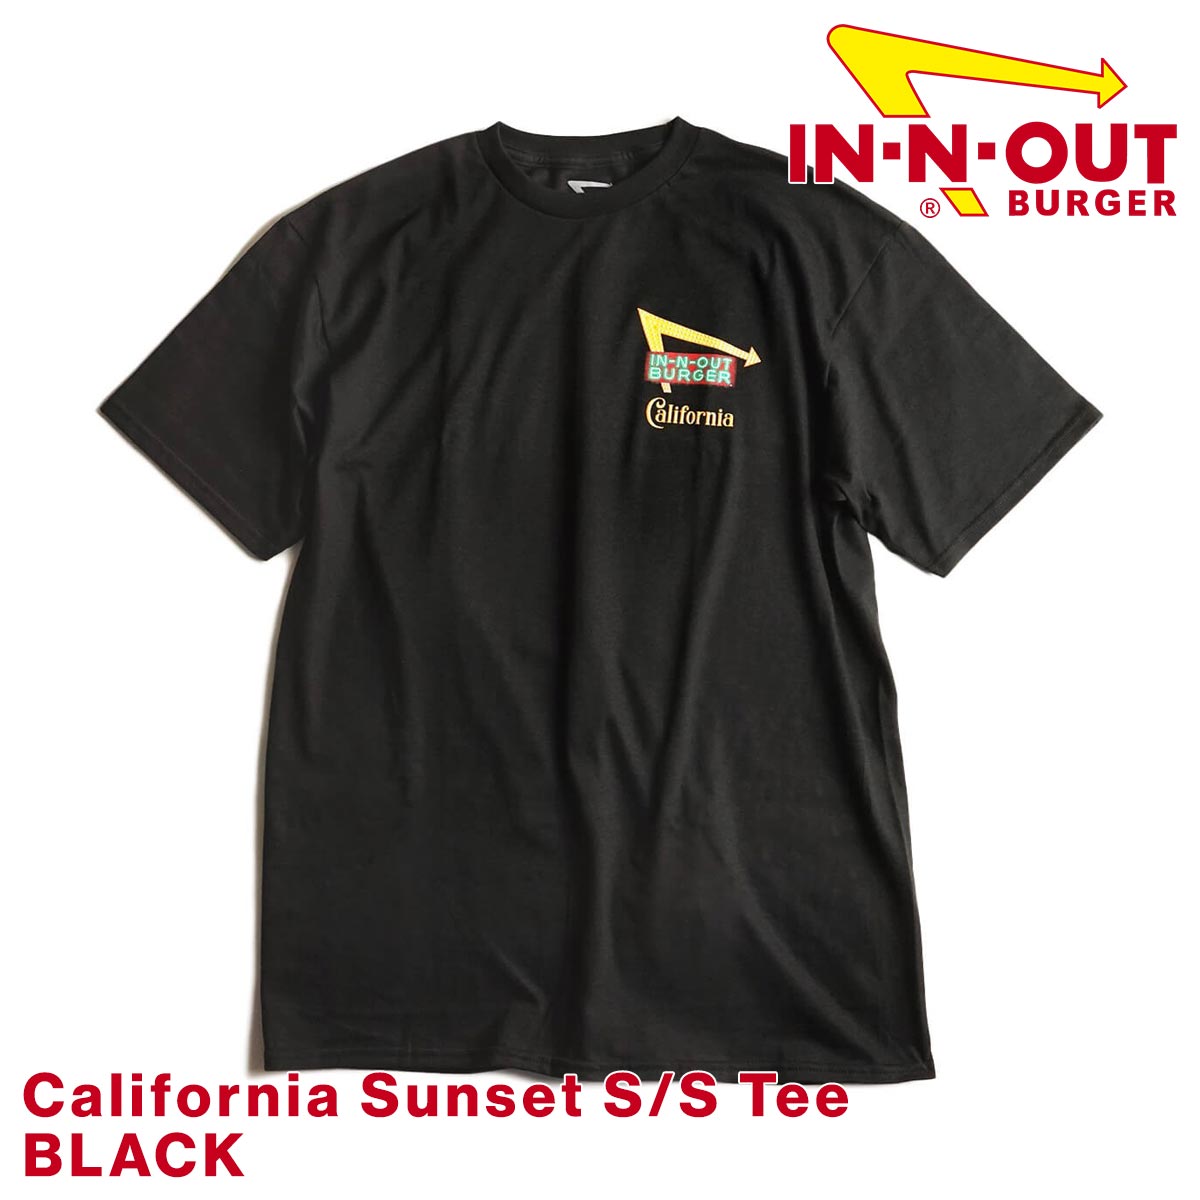 インアンドアウトバーガー 半袖 Tシャツ 2020 カリフォルニアサンセット ブラック メンズ S-XXL In-N-Out Burger  ご当地Tシャツ 海外買い付け